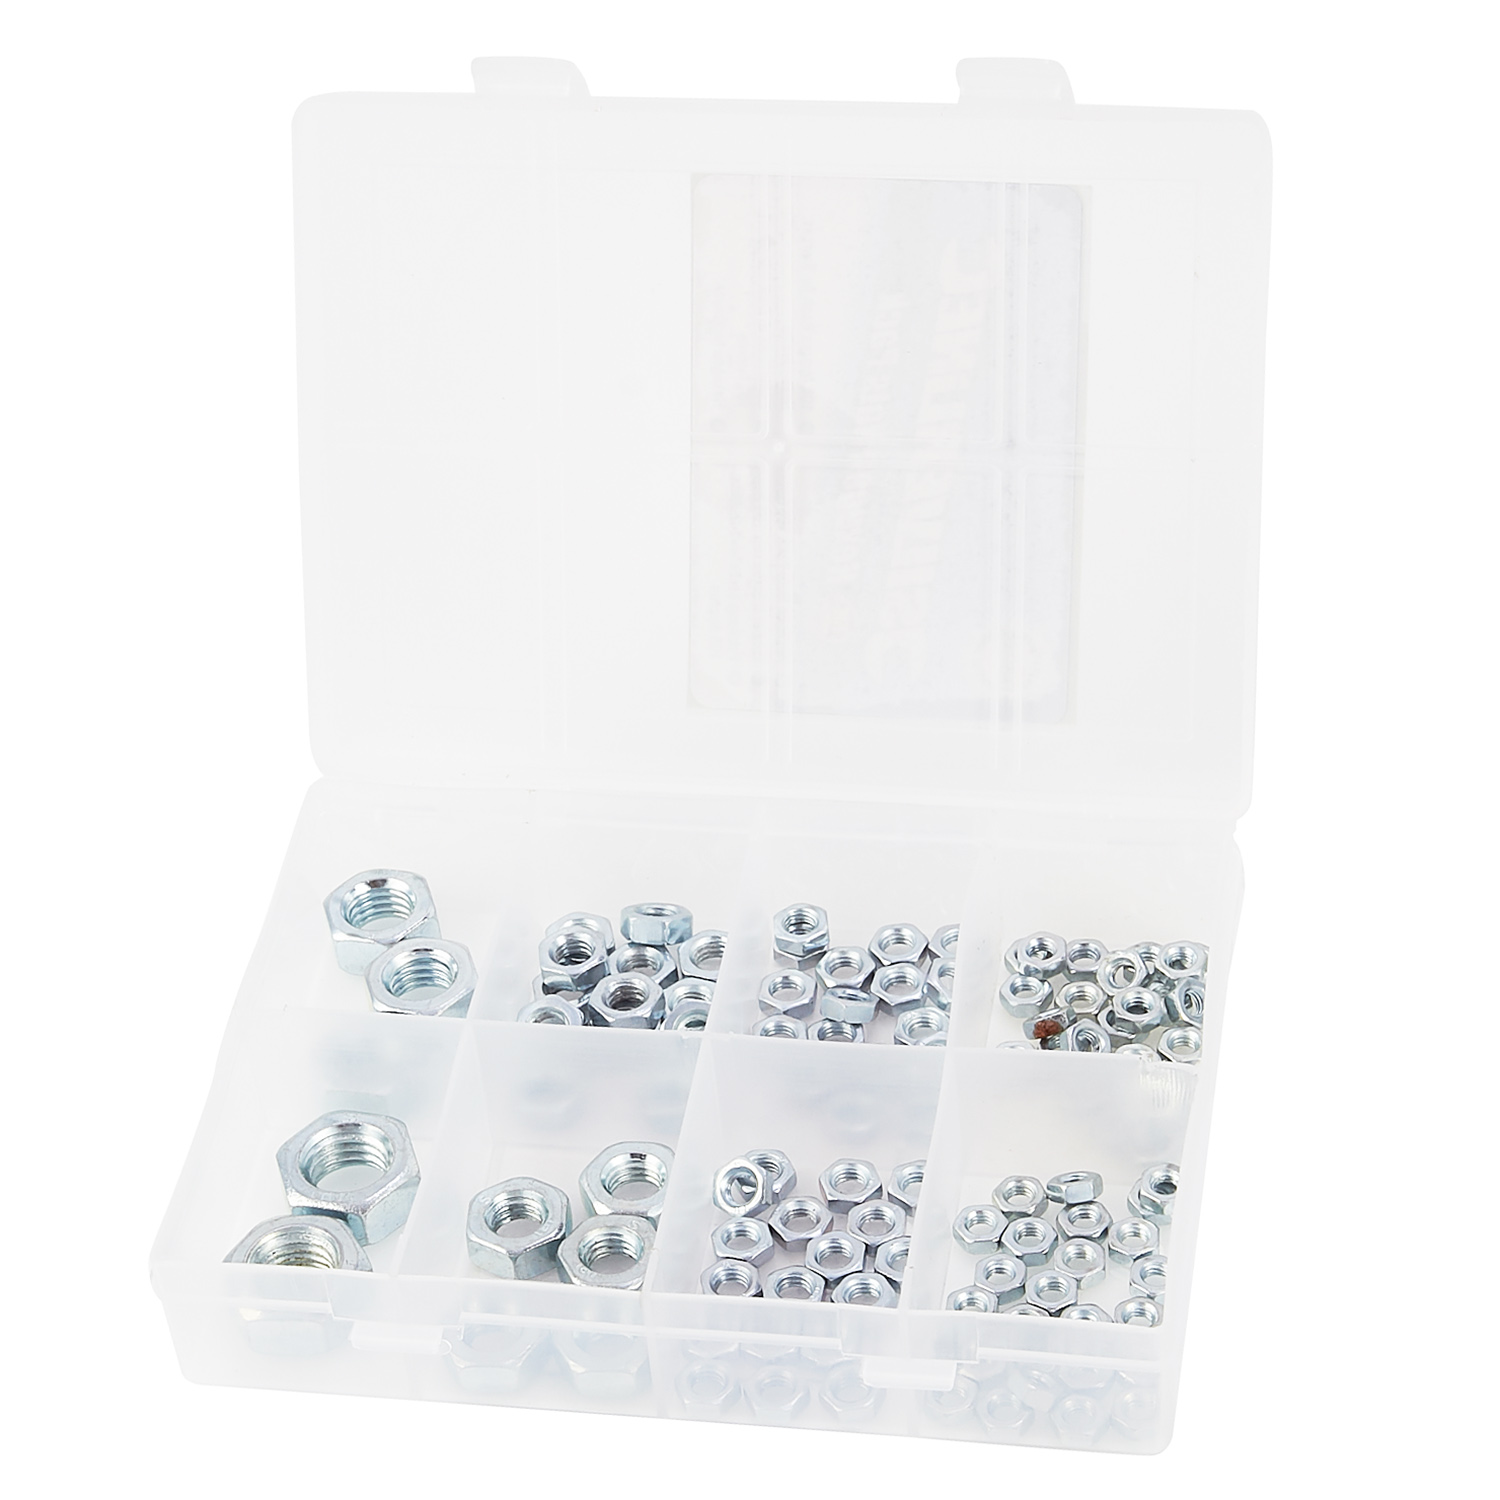 Silverline Kit Boulons Hexagonales  108 pieces, M4-M12